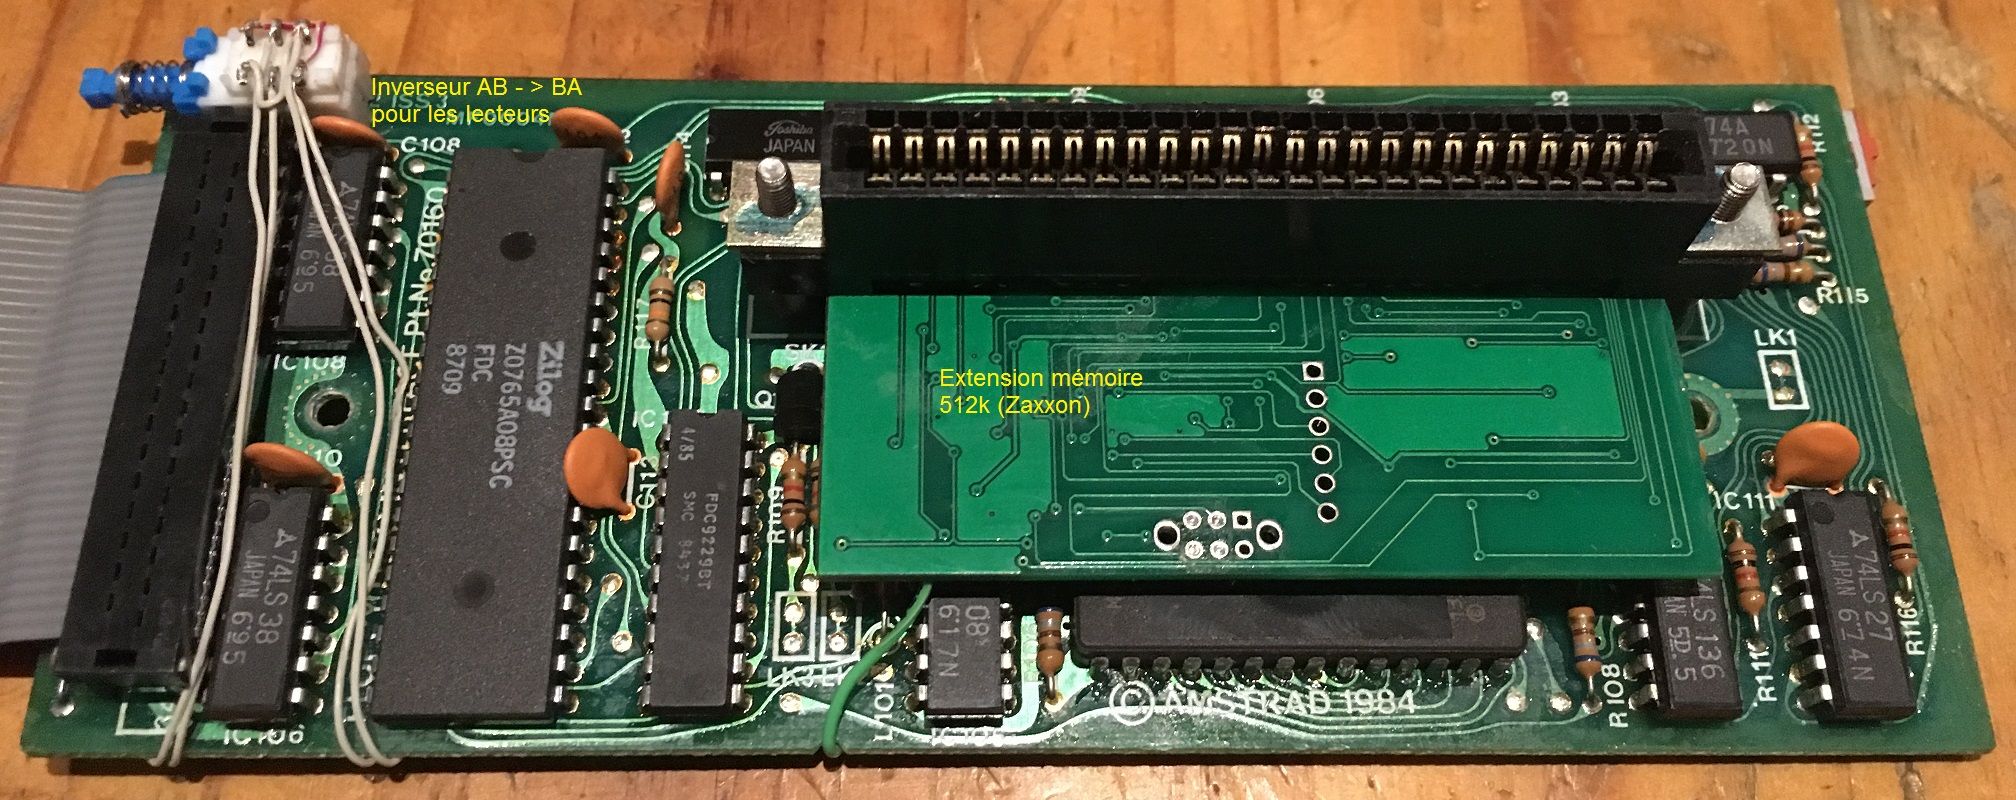 face de l'interface Amstrad CPC DDI-1 modifiée